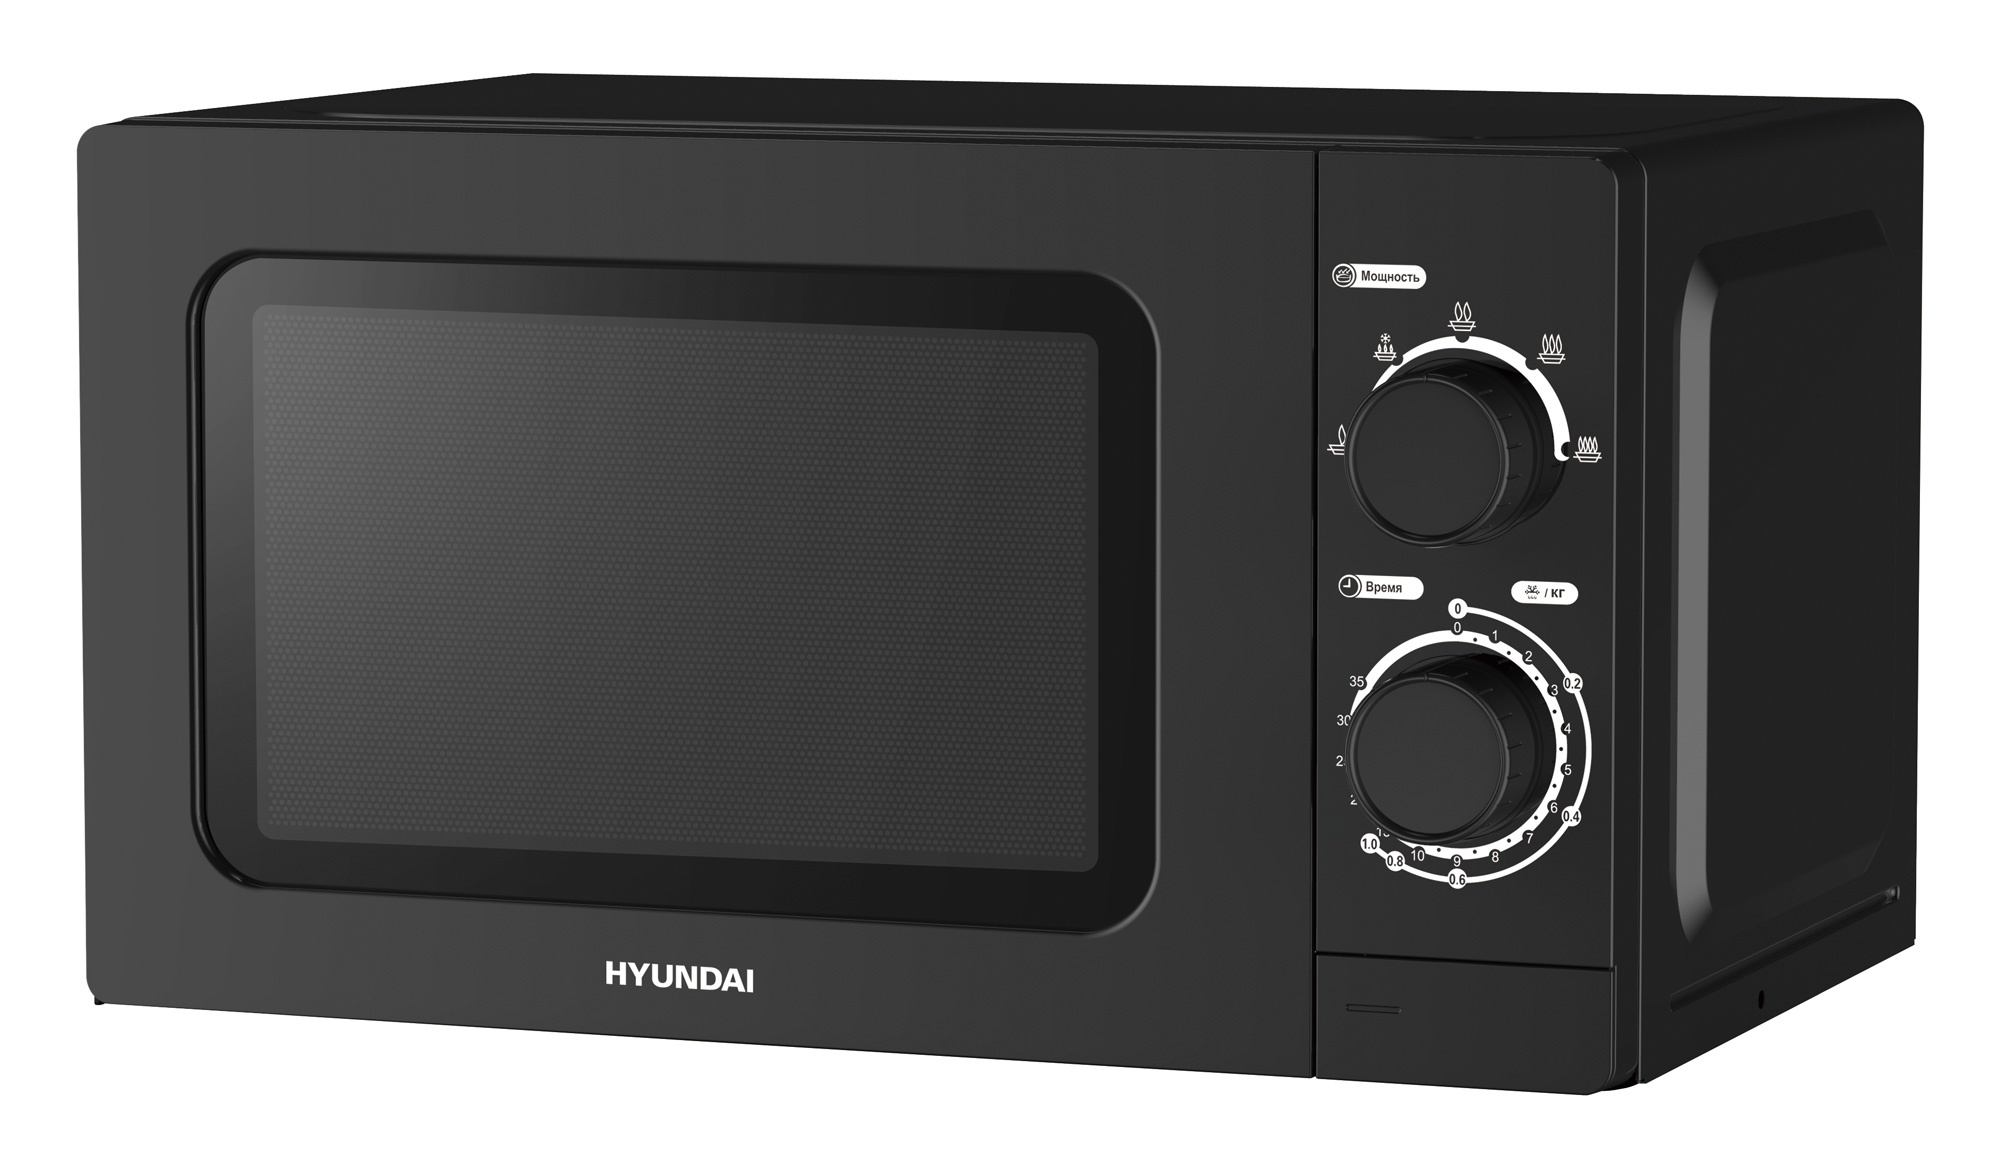 Микроволновая печь hyundai купить. Микроволновая печь Hyundai HYM-m2065 черный. Микроволновая печь Hyundai HYM-m2065, 700вт, 20л,. Микроволновая печь Hyundai HYM-m2060. Микроволновая печь Hyundai HYM-d3002.